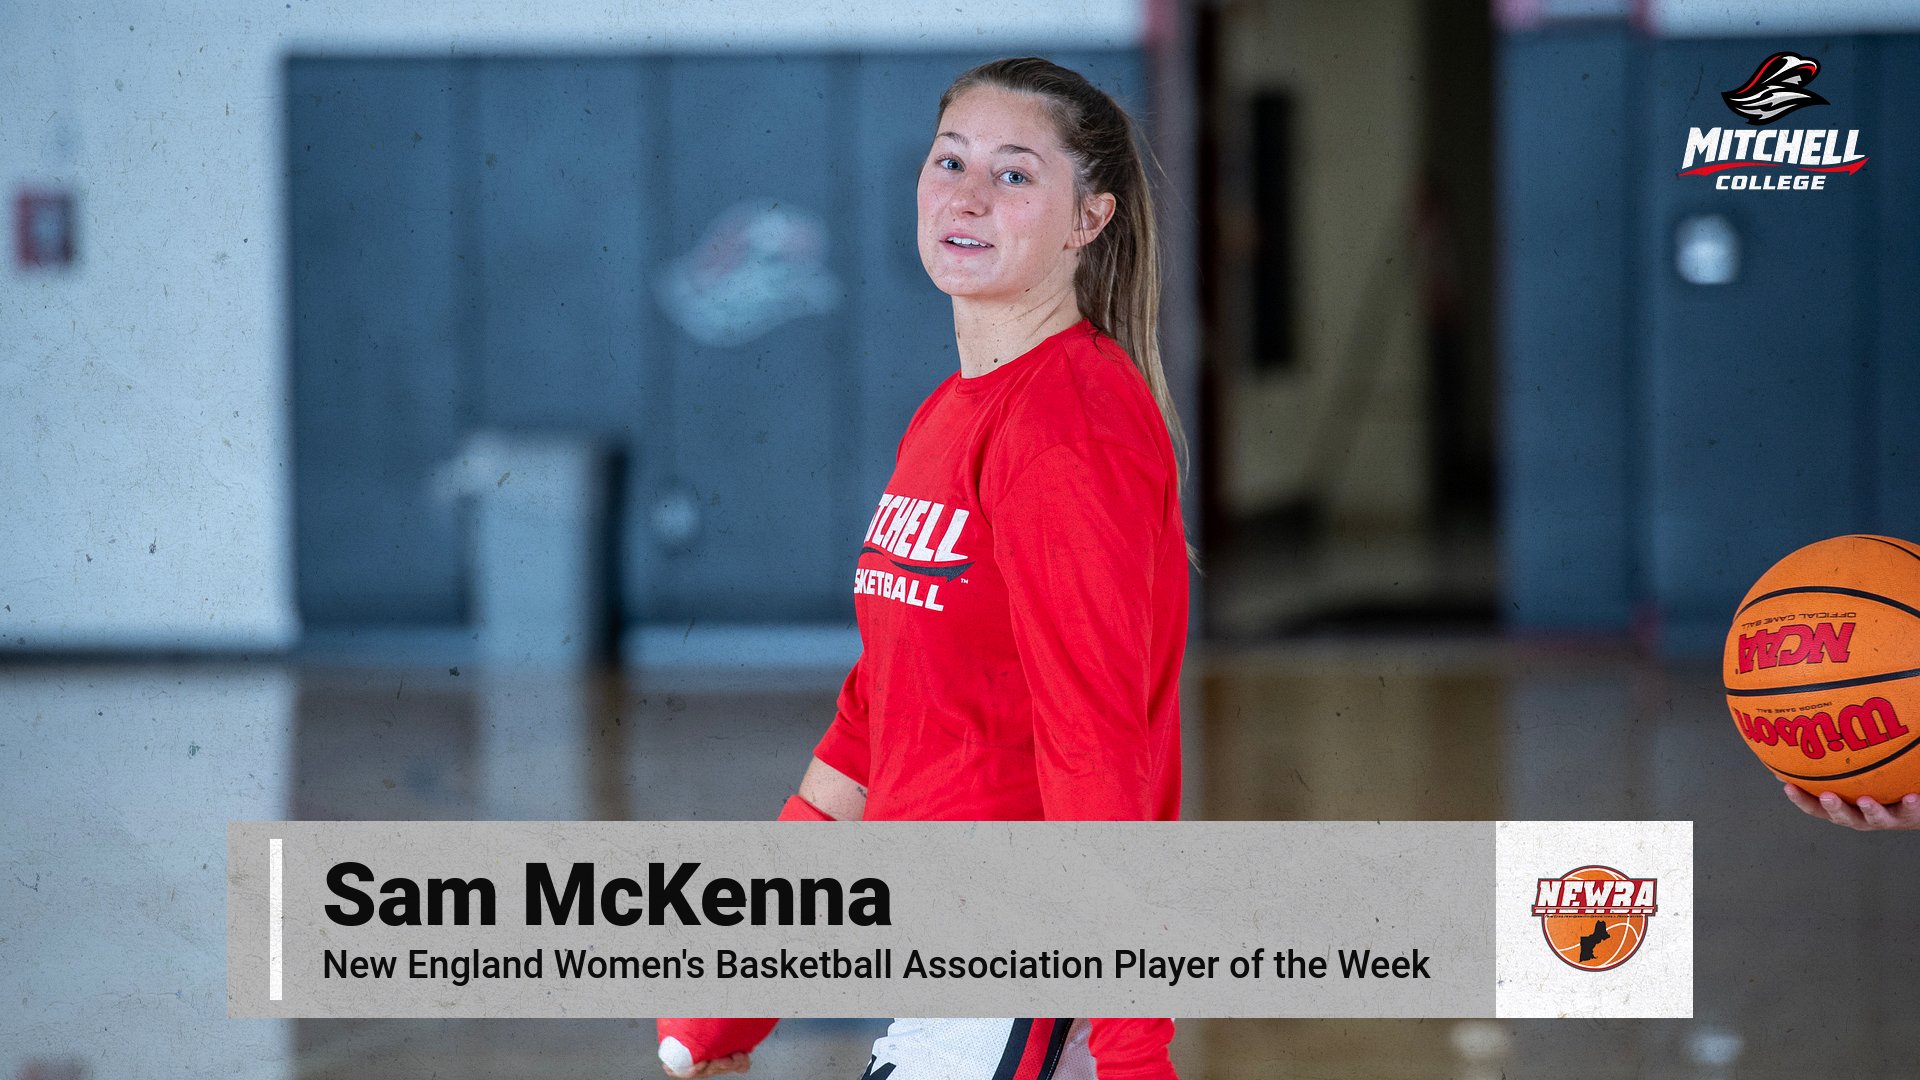 McKenna Earns NEWBA Player of the Week Honors